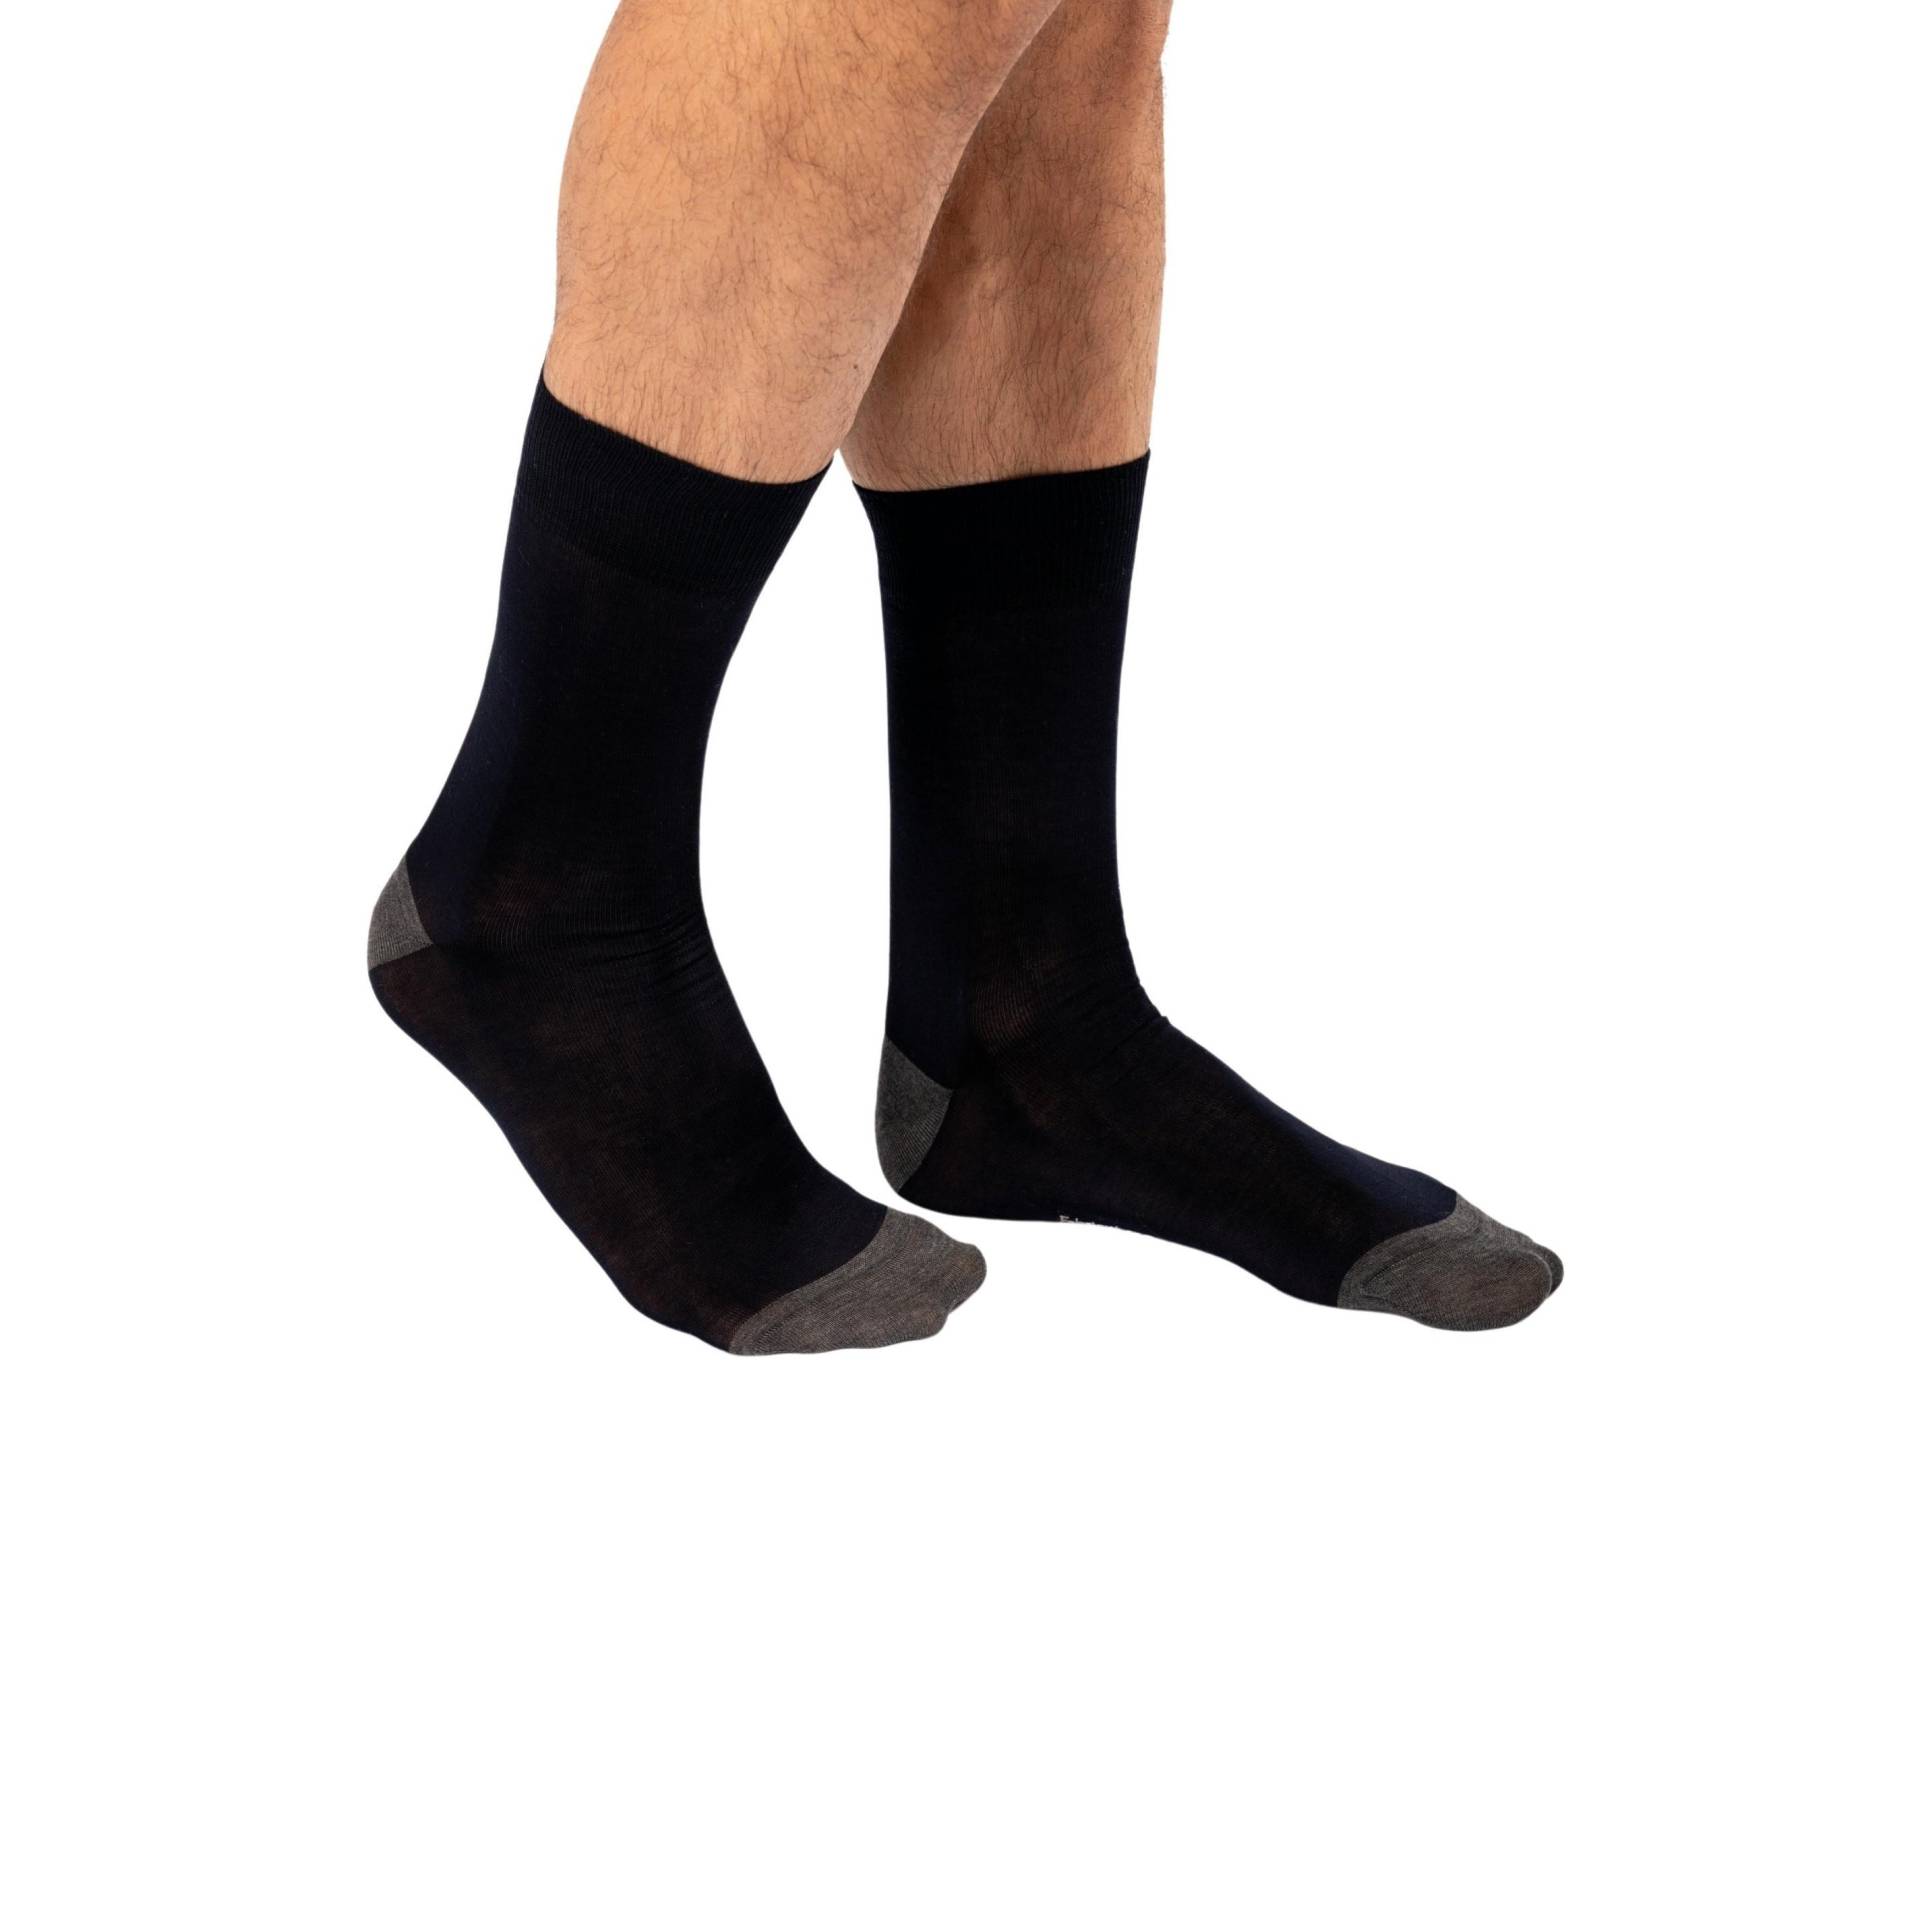 Halbhohe Socken Aus Mercerisierter Baumwolle Origine France Garantiert Herren  35-38 von Kariban